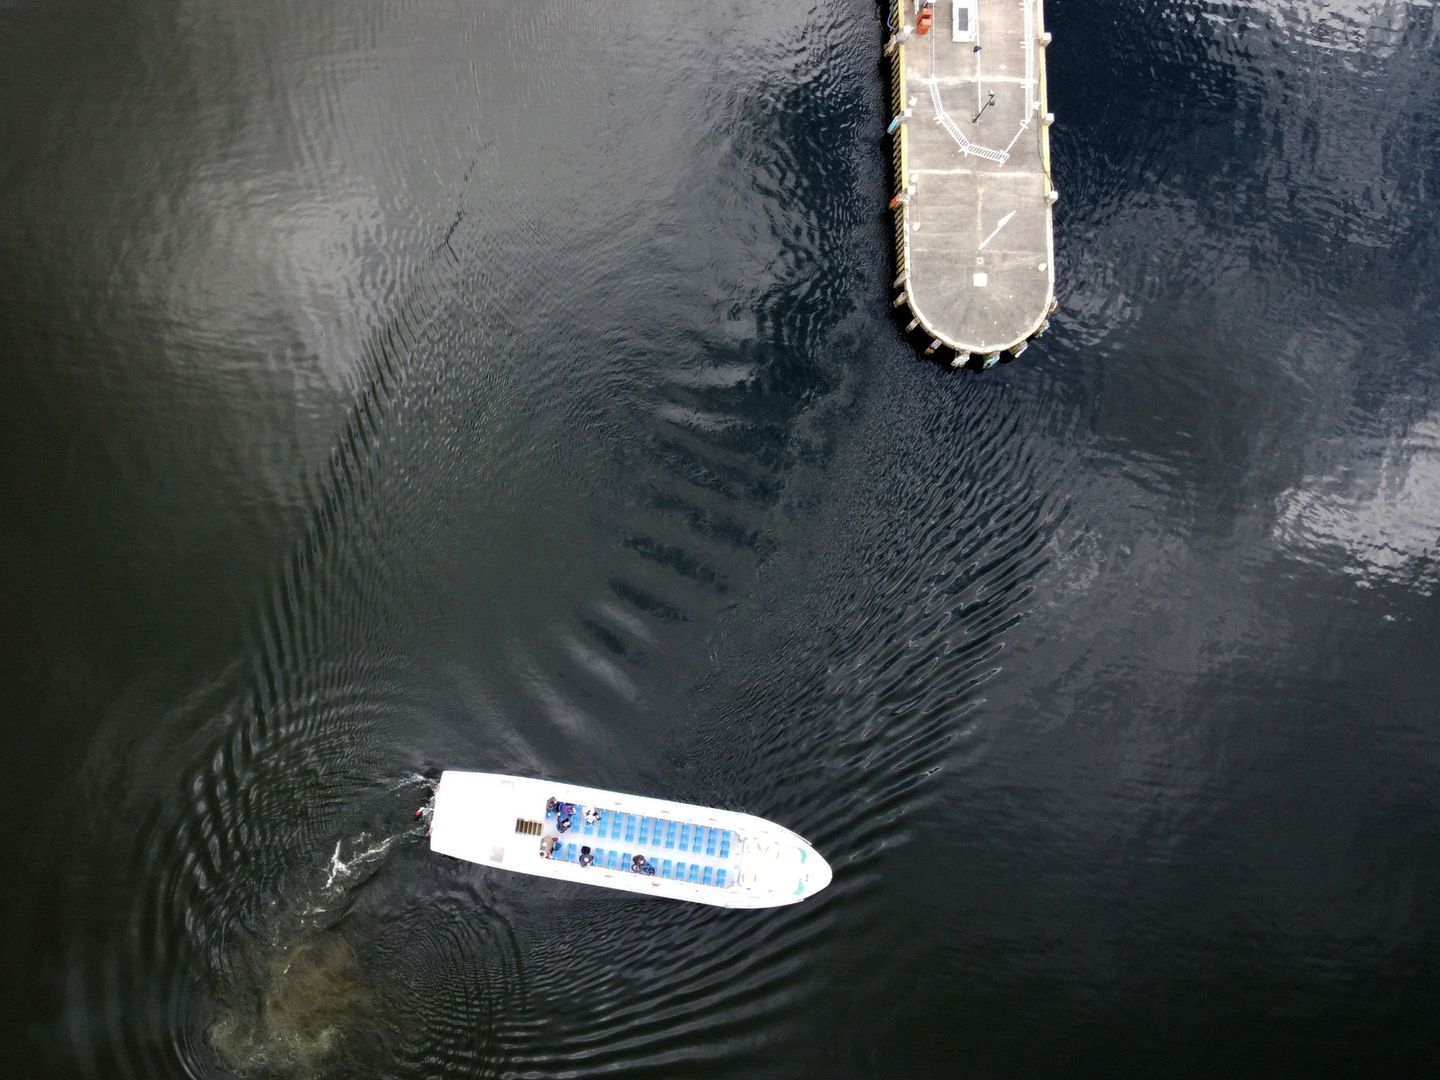 Las aguas del lago Windermere están altamente contaminadas (Reuters/L. Smith)